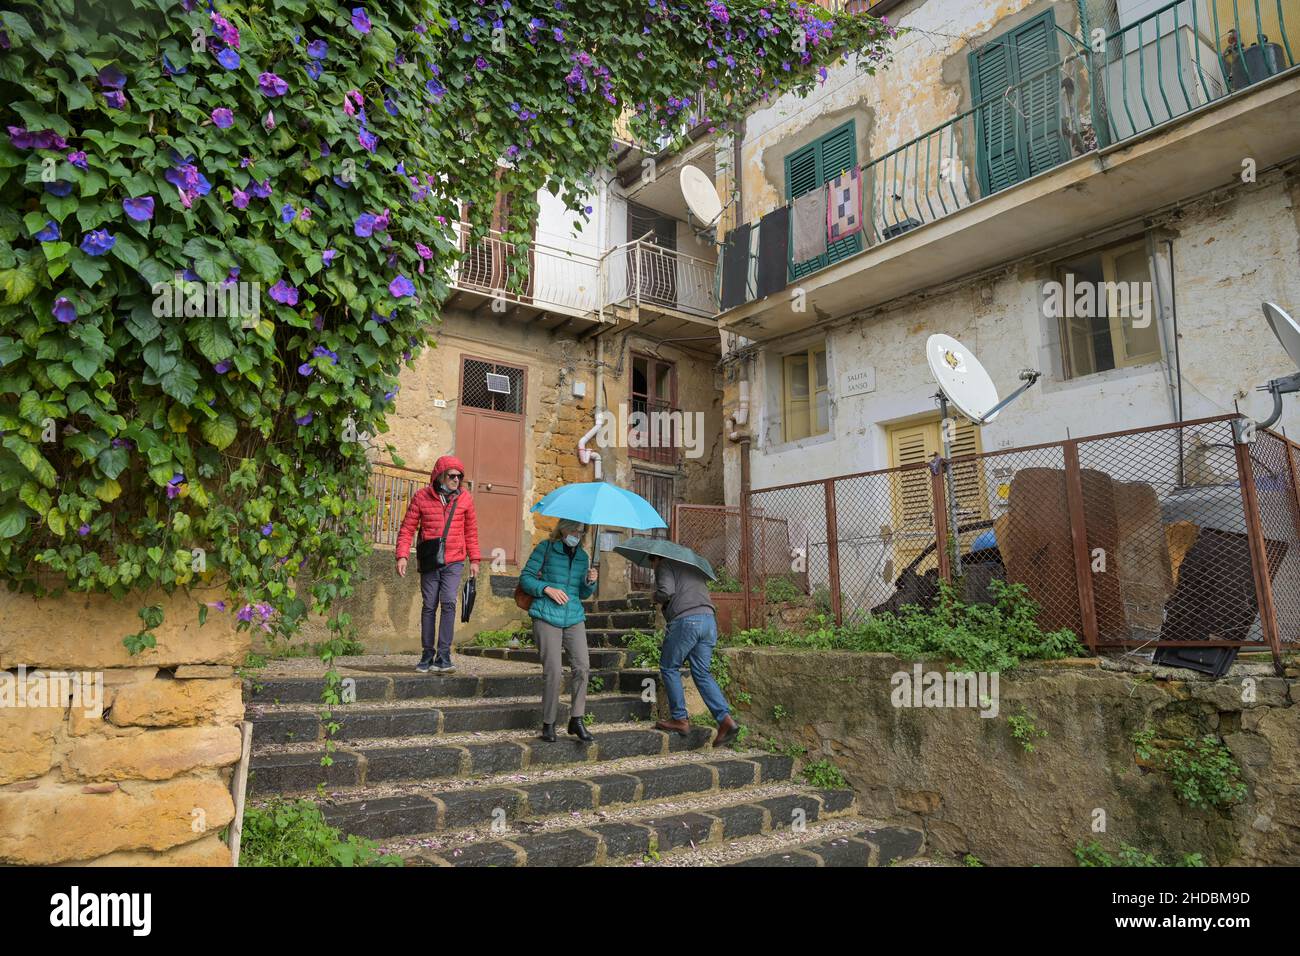 Gasse, Altstadt, Agrigent, Sizilien, Italien Foto Stock